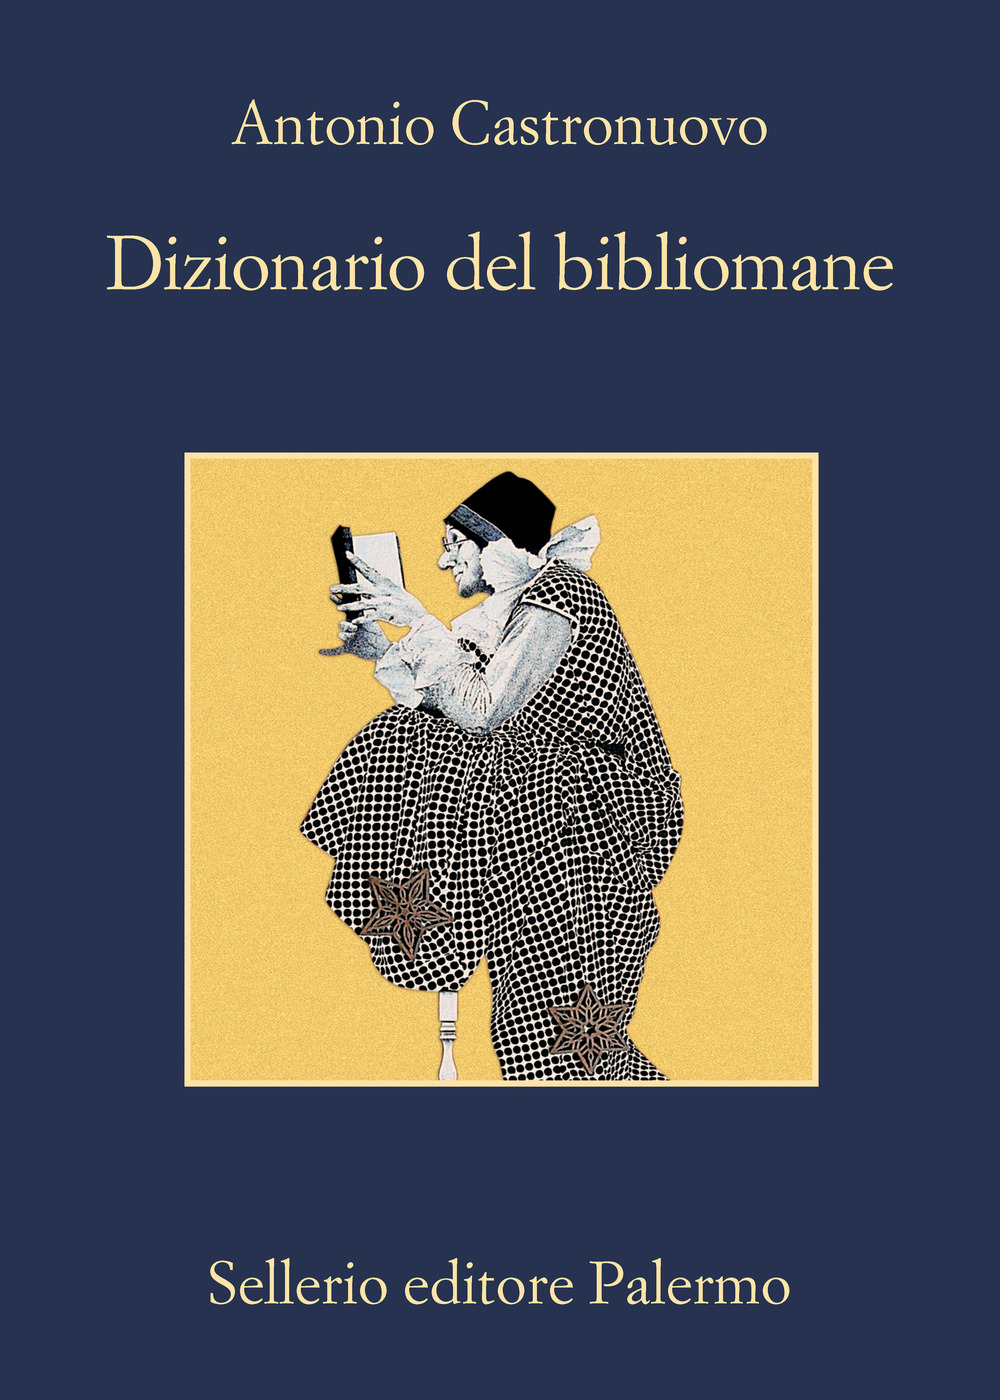 Libri Antonio Castronuovo - Dizionario Del Bibliomane NUOVO SIGILLATO, EDIZIONE DEL 04/11/2021 SUBITO DISPONIBILE